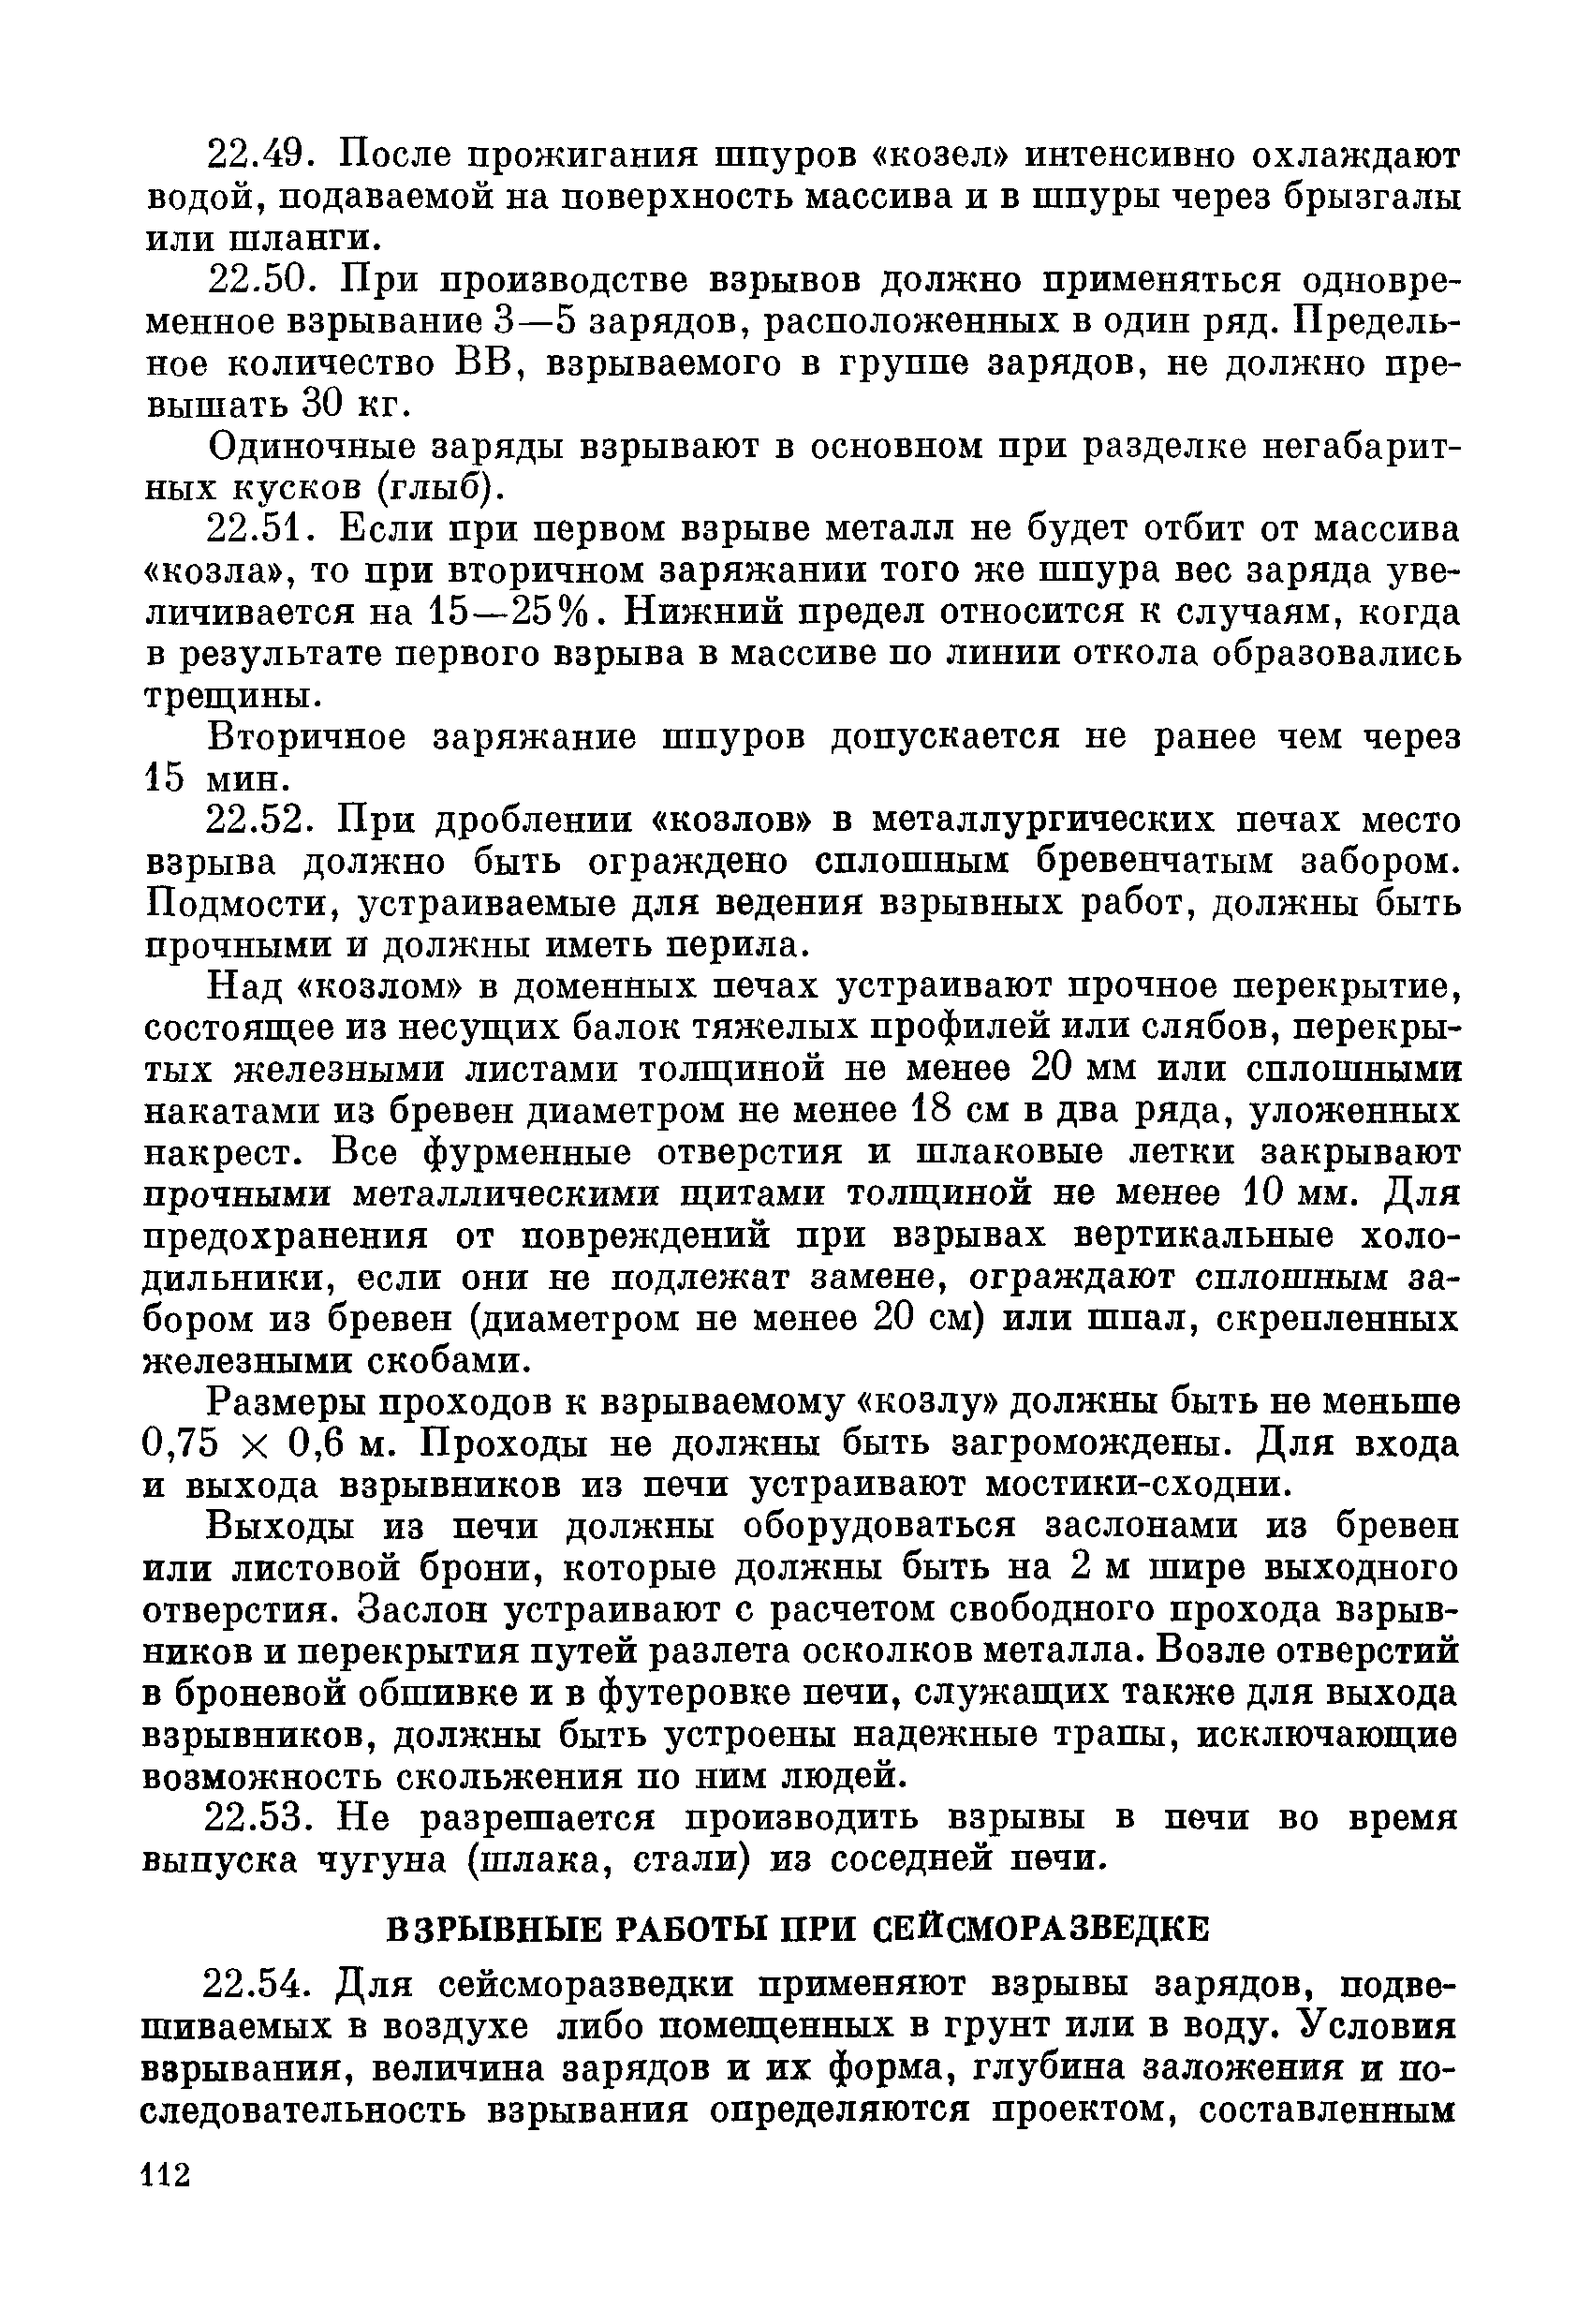 ВСН 281-71/ММСС СССР